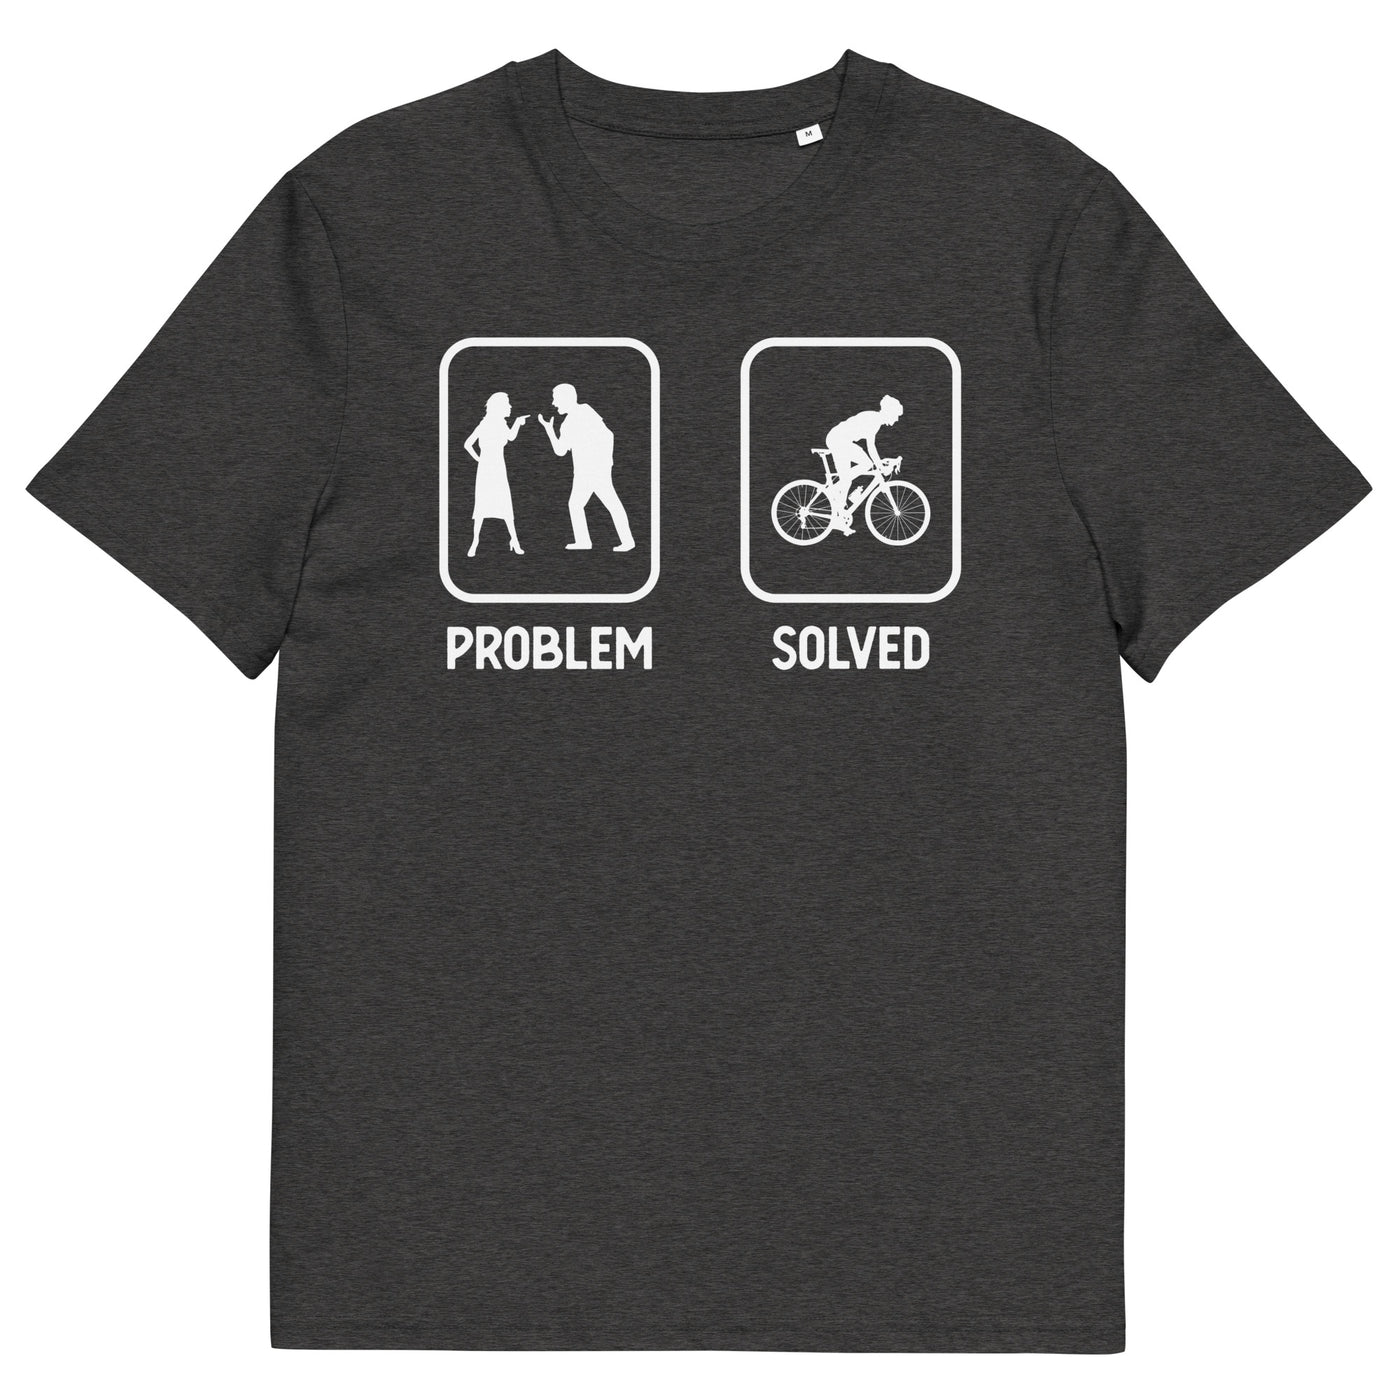 Problem Solved - Mann Radfahren - Herren Premium Organic T-Shirt fahrrad xxx yyy zzz Dark Heather Grey